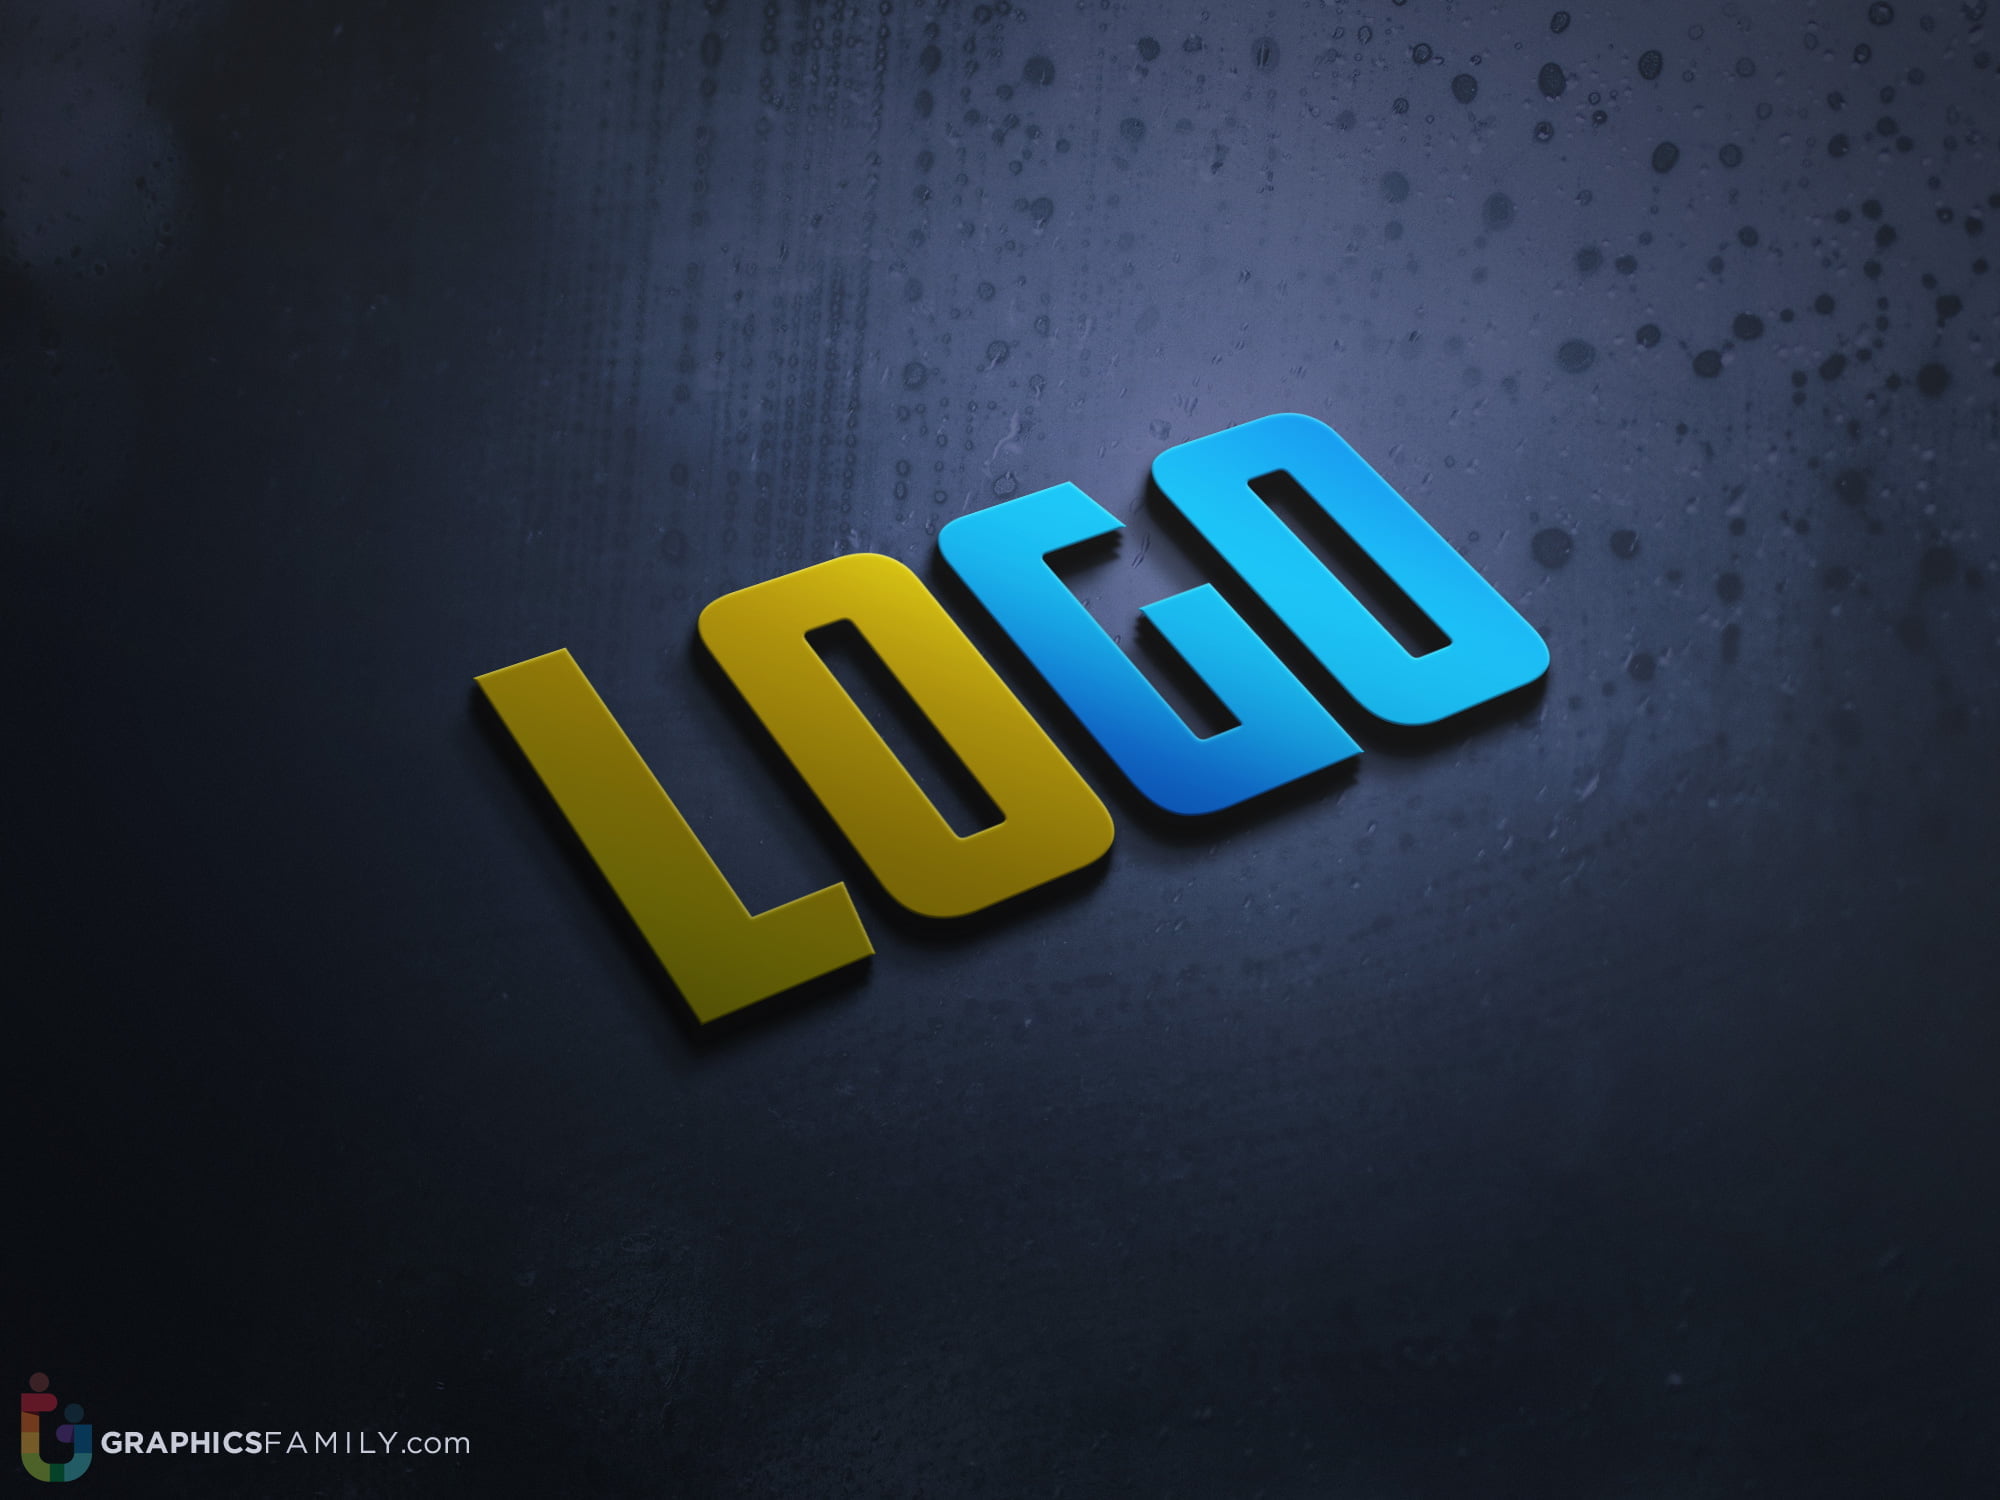 3d logo mockup psd free